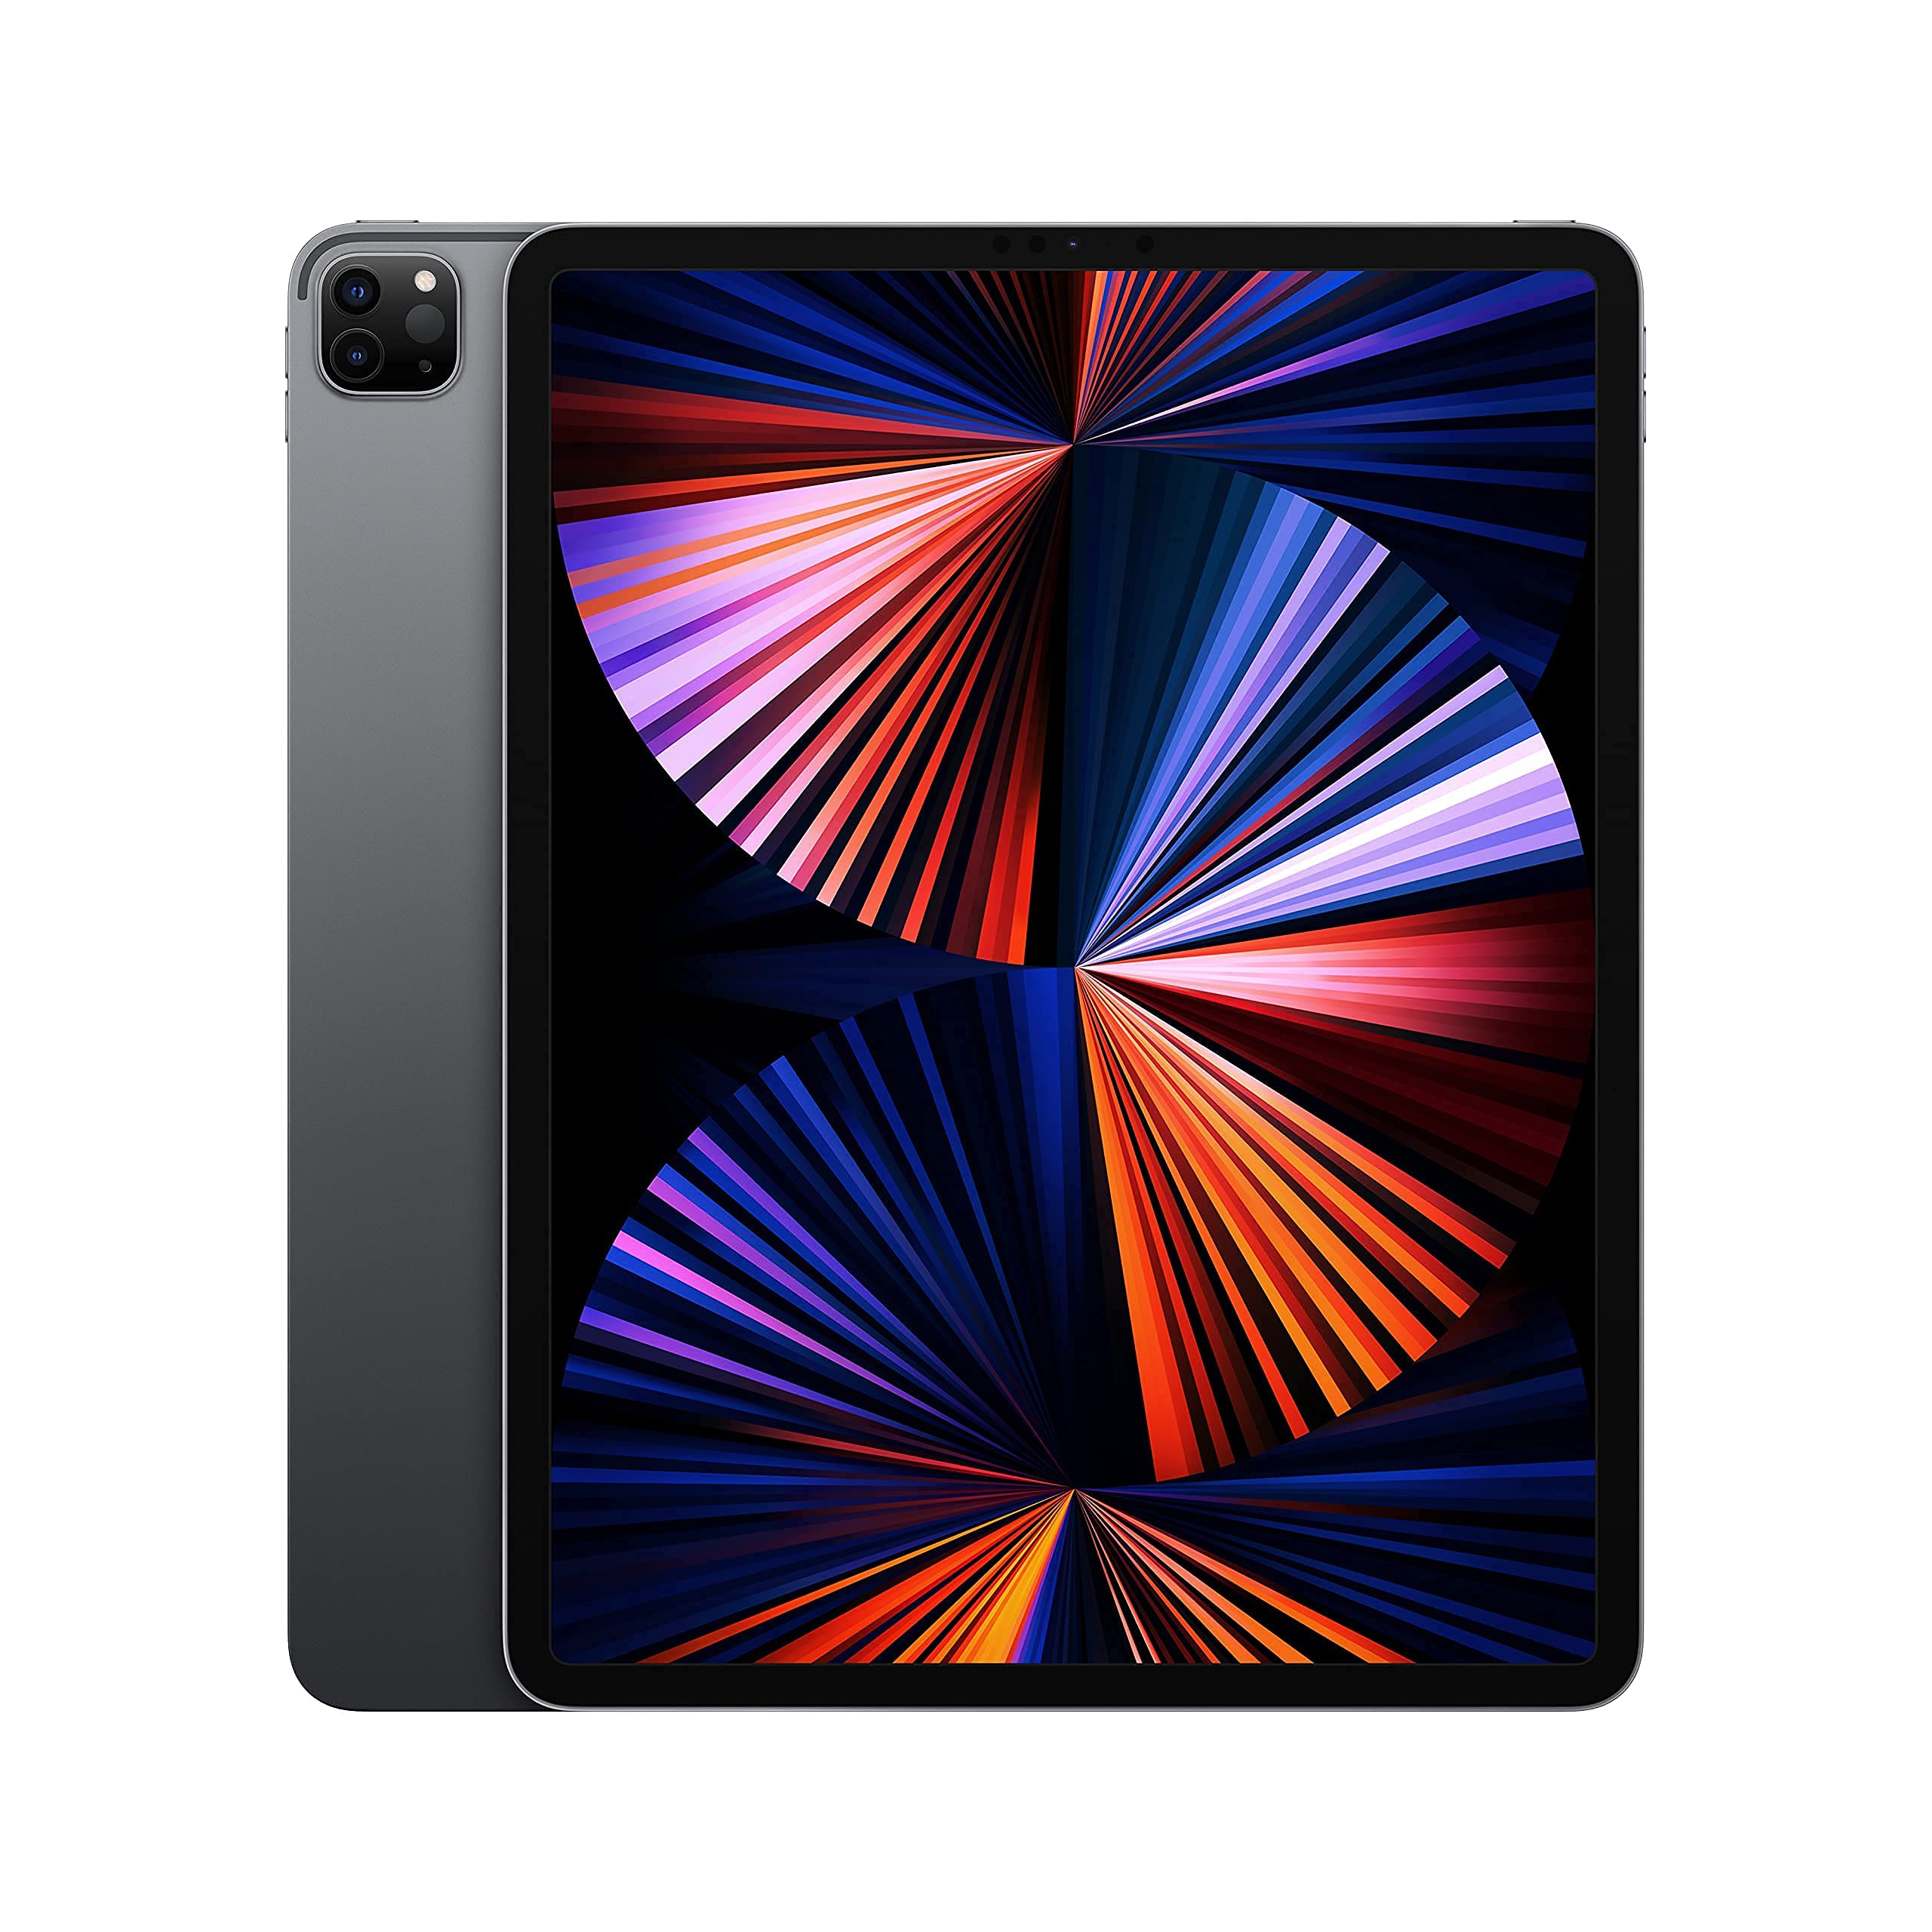 2021 Apple 12.9-inch iPad Pro (Wi‑Fi, 256GB) - Space Gray (Renewed)